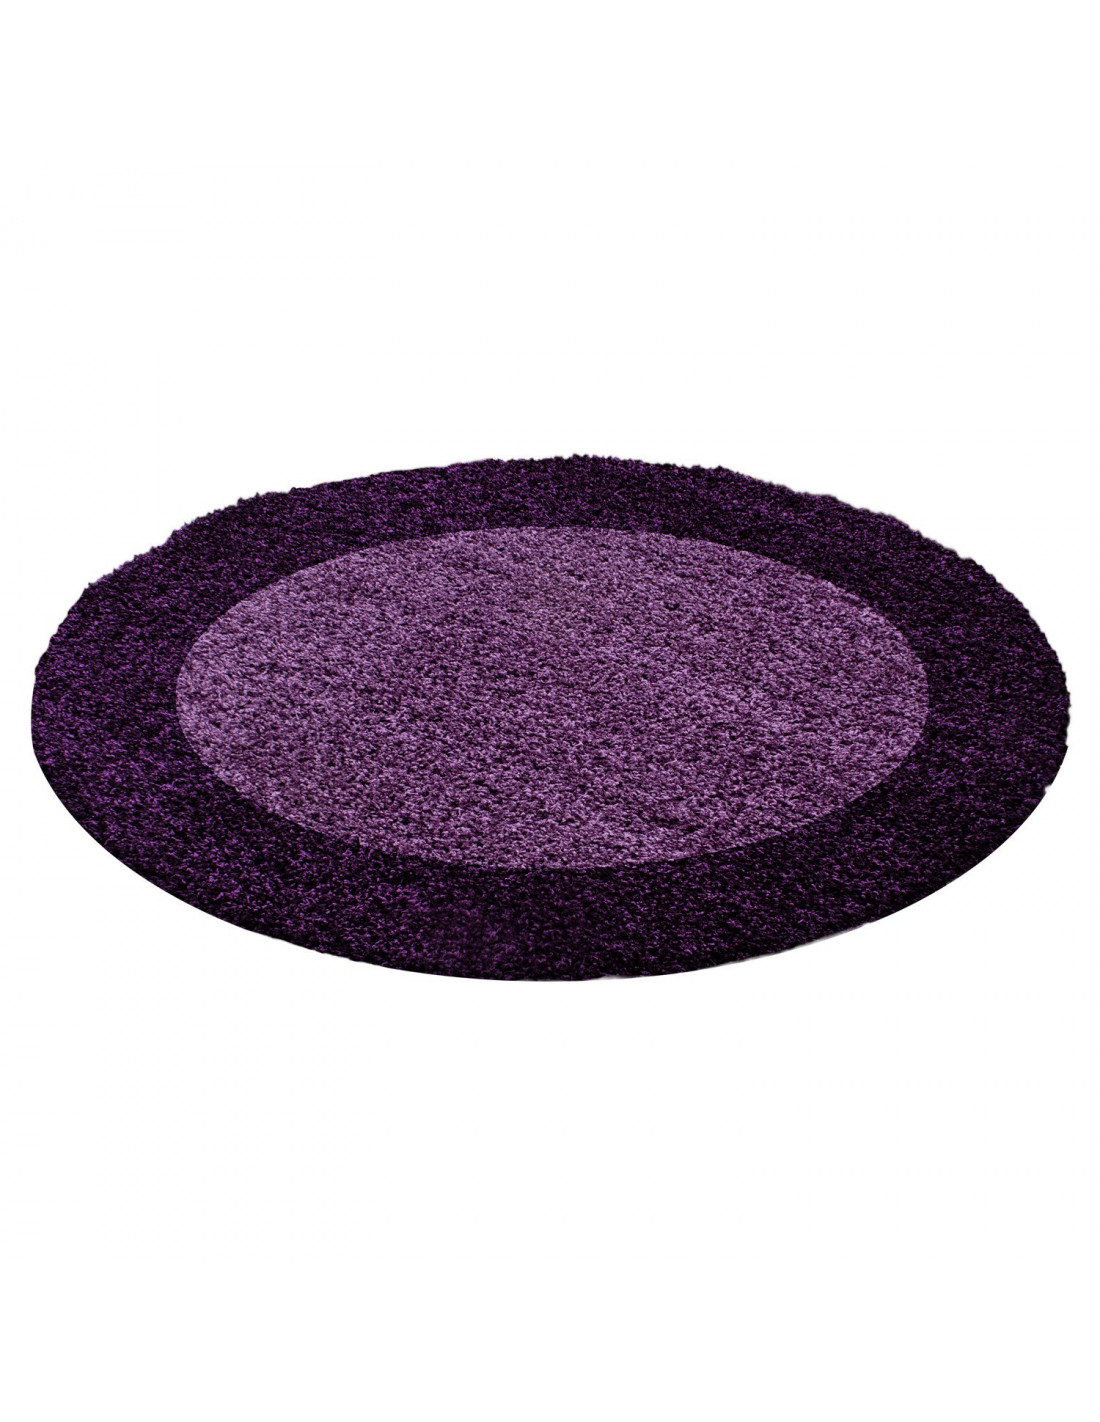 Tappeto a pelo lungo, pelo alto, pelo lungo, tappeto a pelo lungo da soggiorno, 2 colori, altezza pelo 3 cm, viola lilla